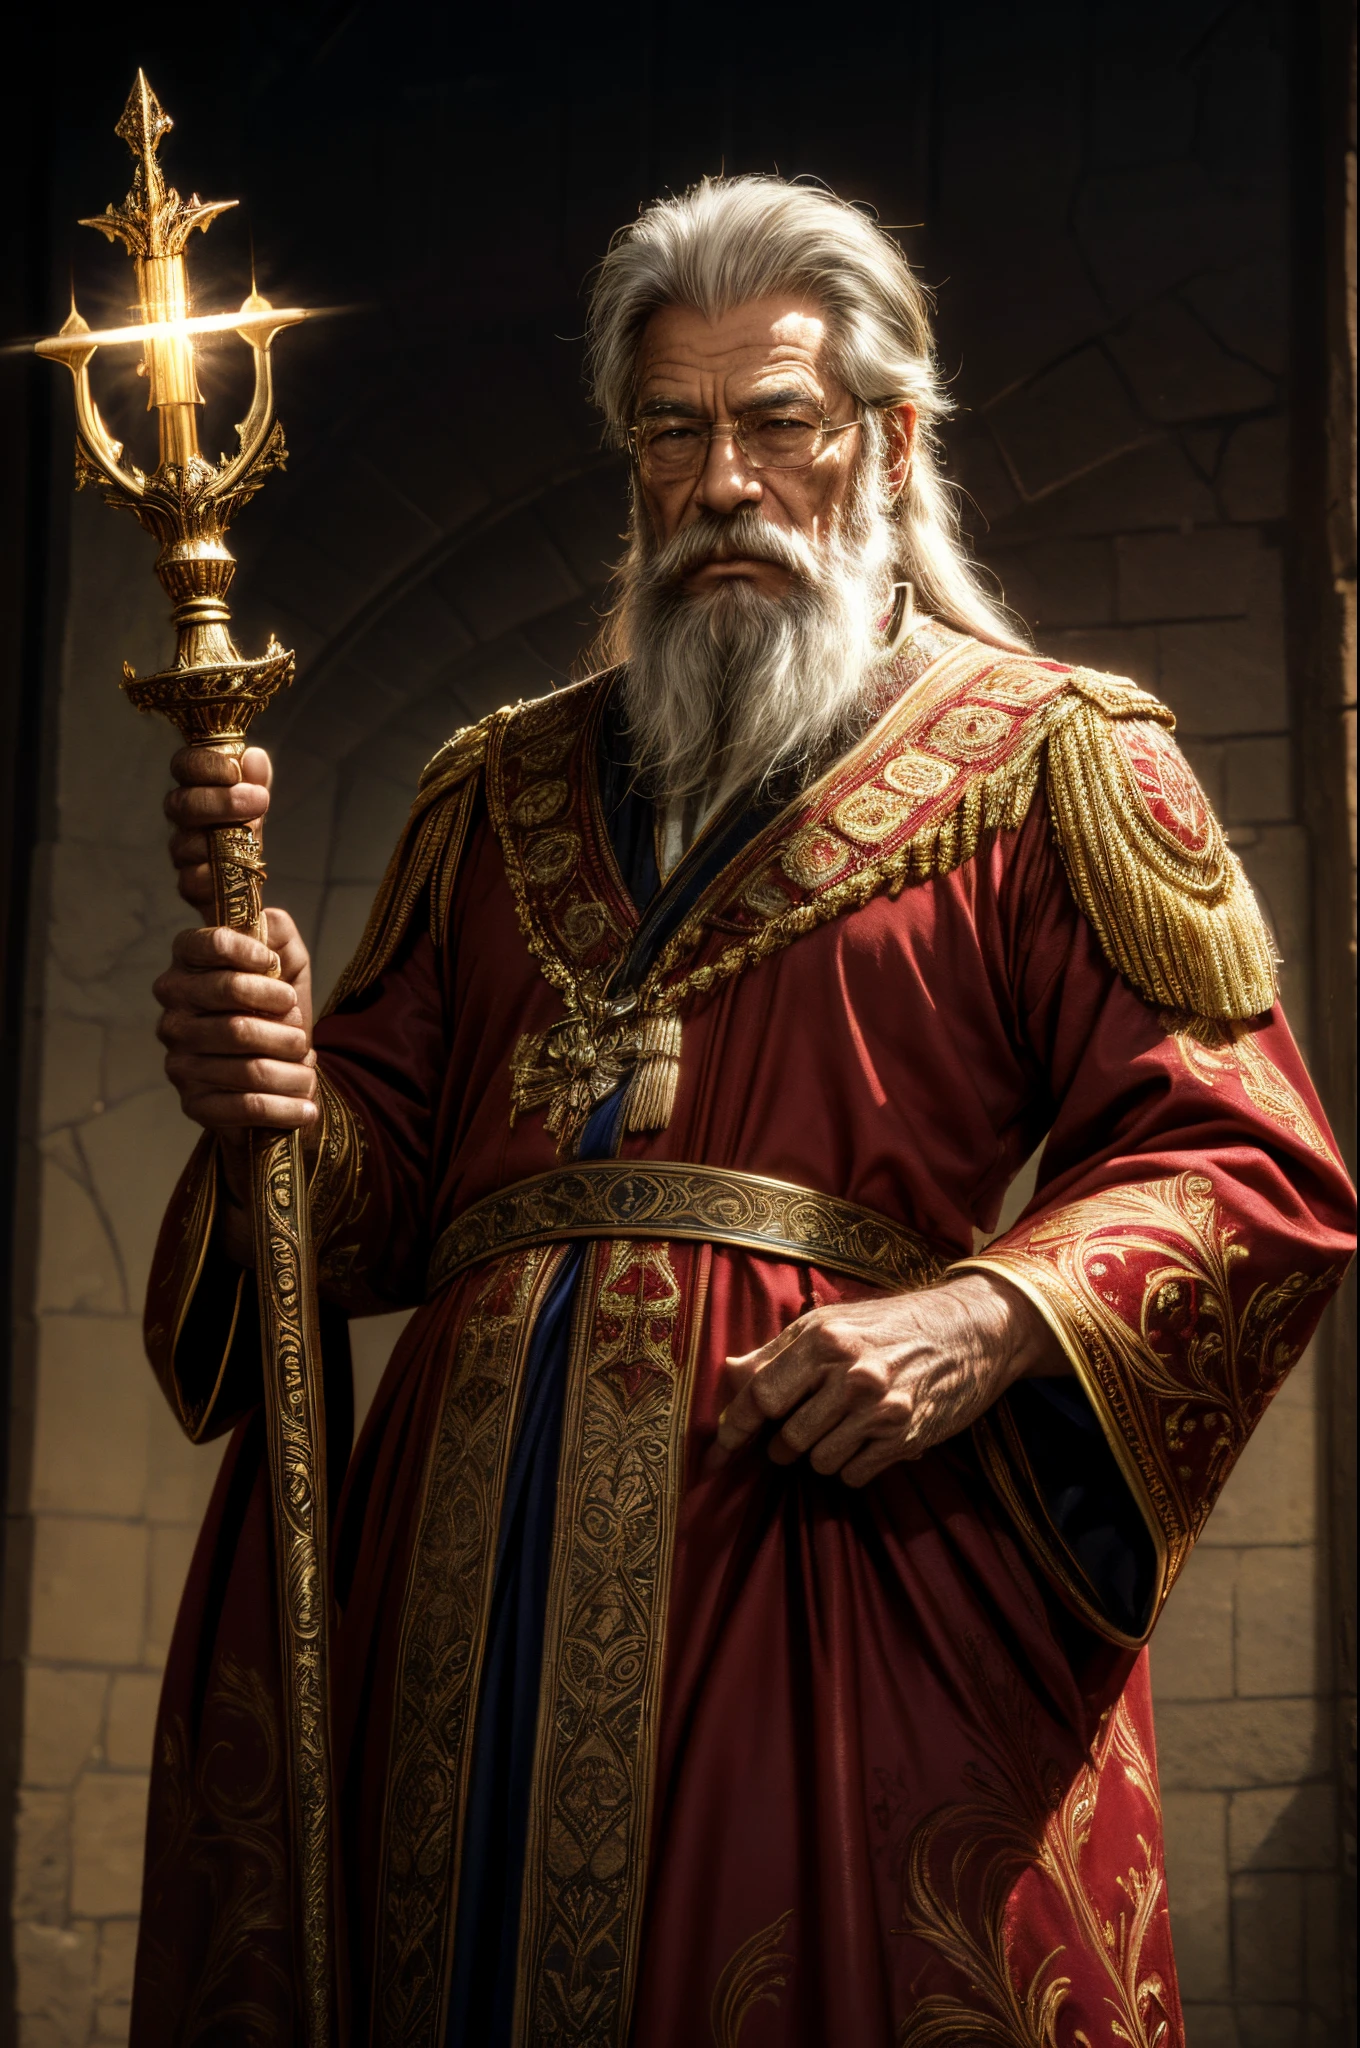 ローランド王, 62歳の男性, あなたの王室で. 灰色の雄大なひげを強調表示する, 尊敬と経験のオーラを与える. 王は豊かな赤と金の色合いを取り入れた王室の衣装を着ている。. 彼はシンボルの刻まれた王笏を手に持っている. 部屋には過去の伝説を伝えるタペストリーが飾られている. このファンタジー王国で王の威厳と確固たるリーダーシップを伝えます.